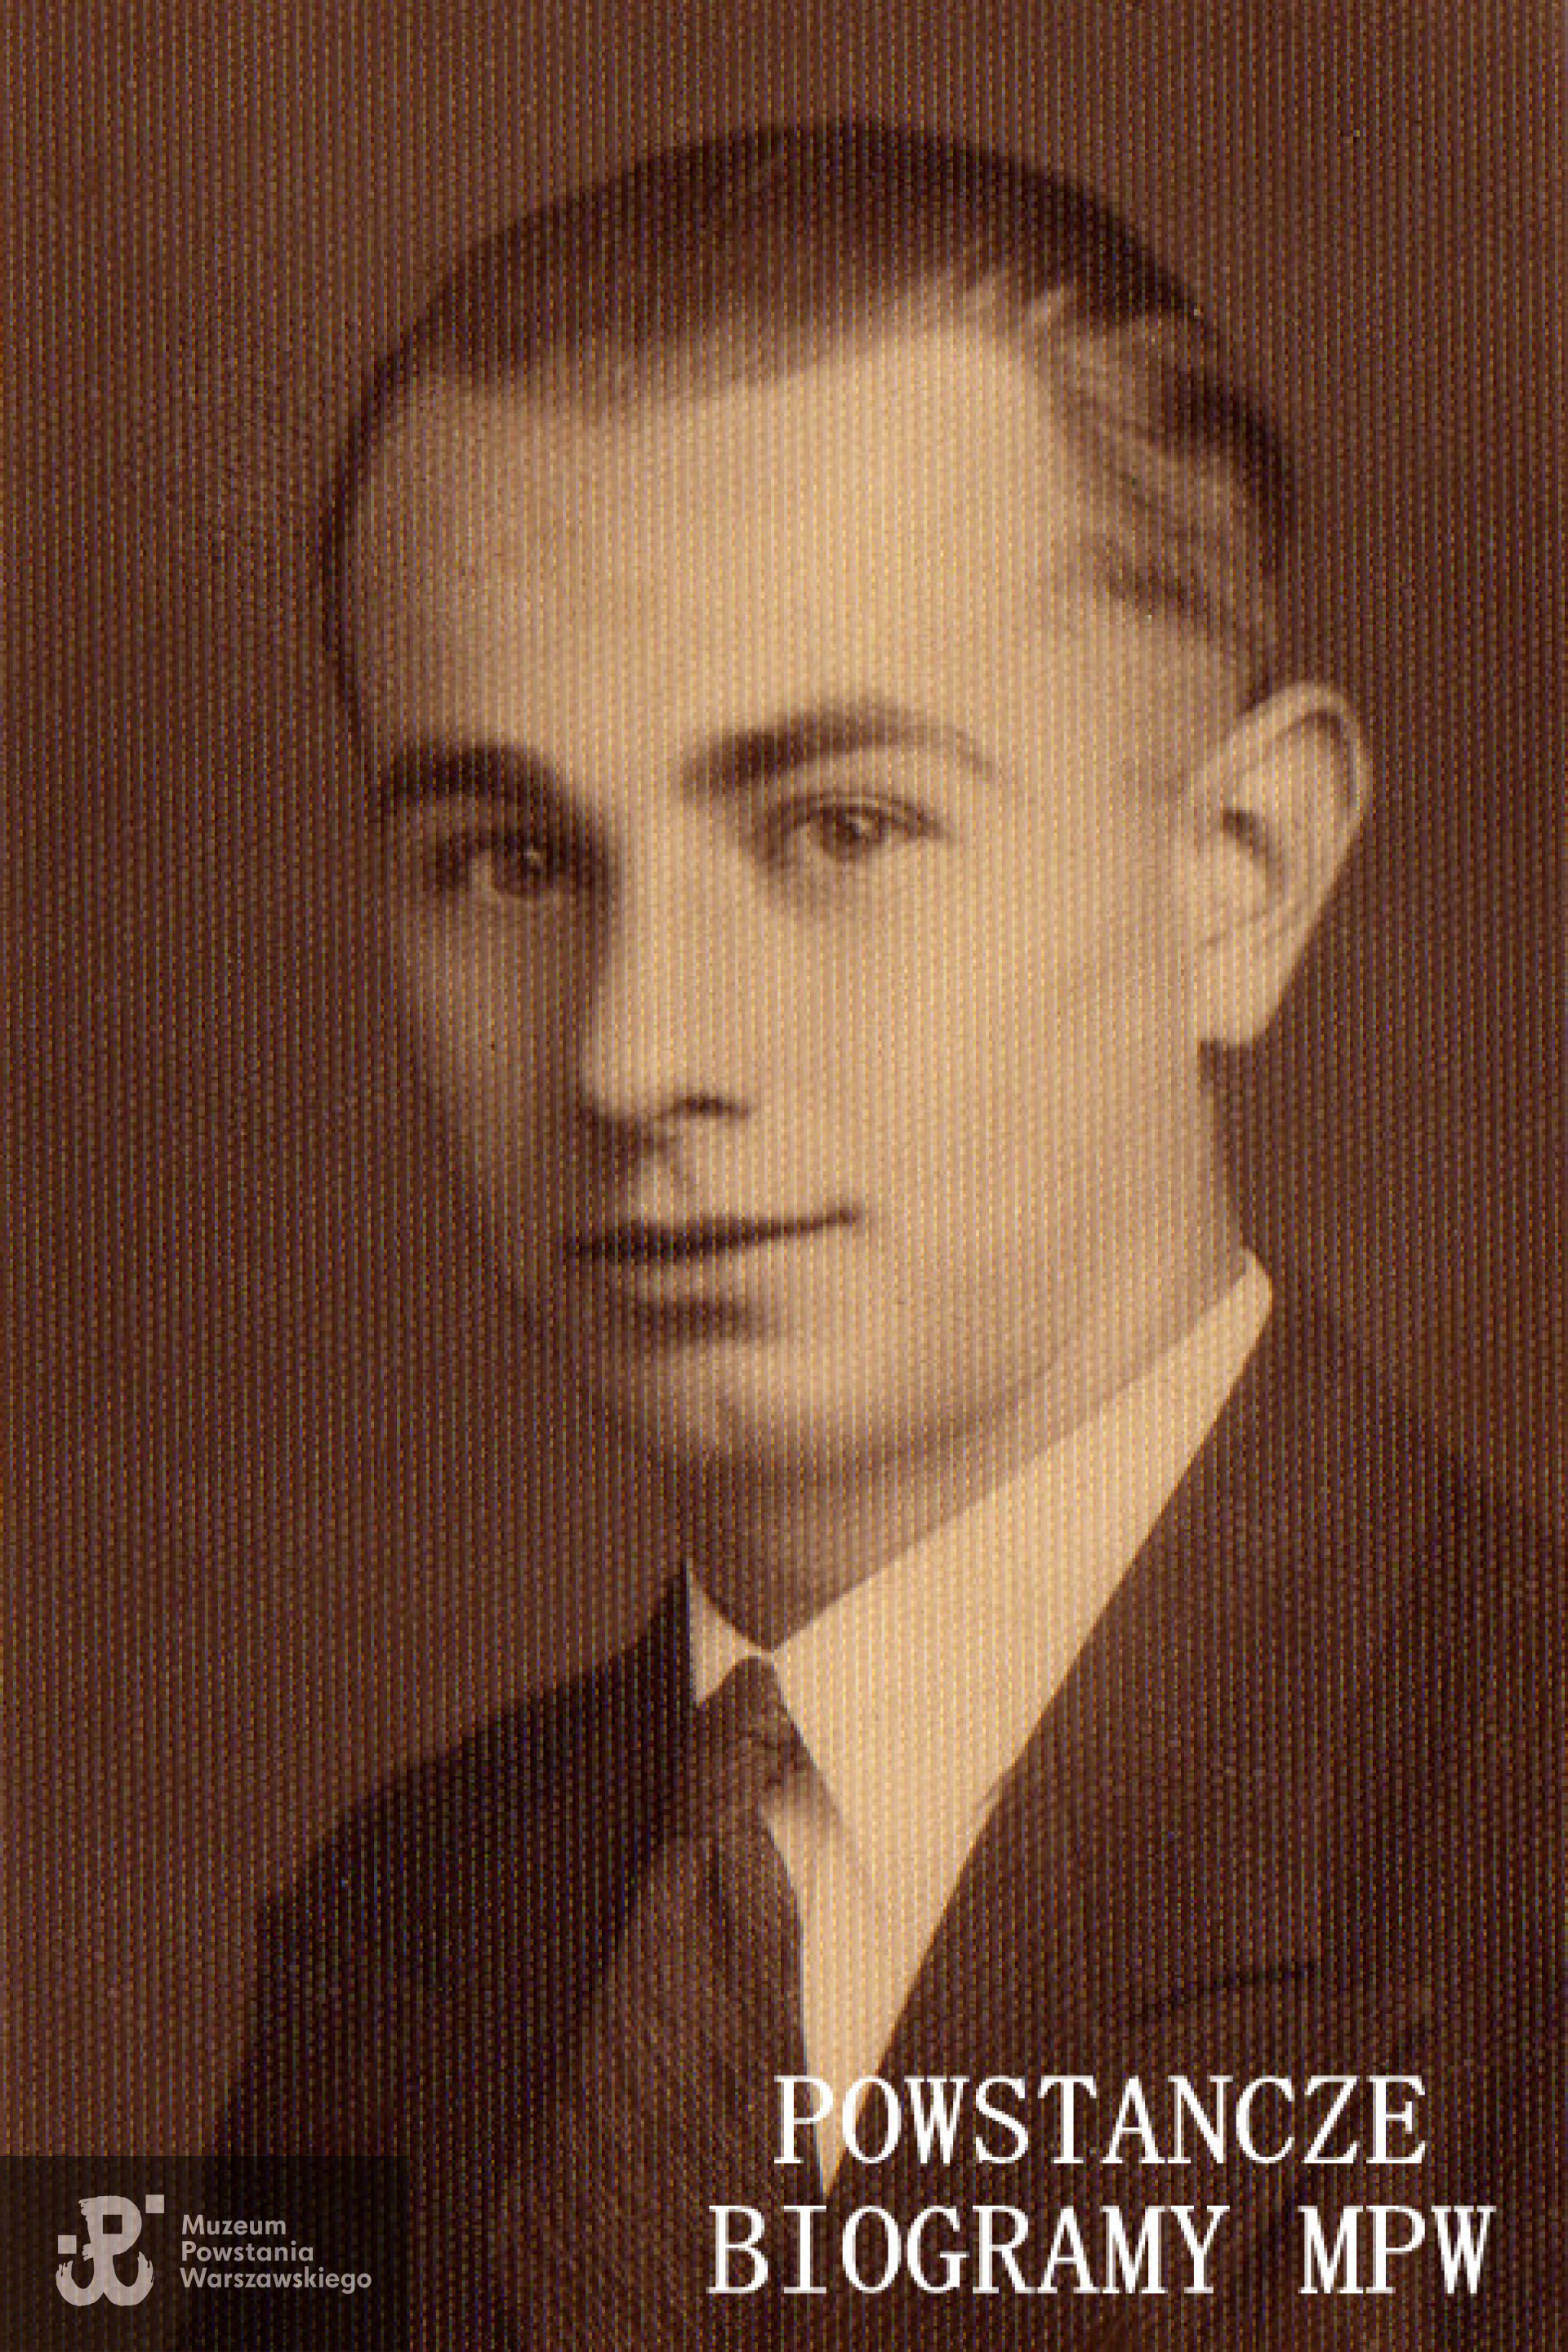 sierż. pchor. Stanisław Kotłowski "Orłowski" (1913-1981). Fot. udostępnił Cezary Cichocki